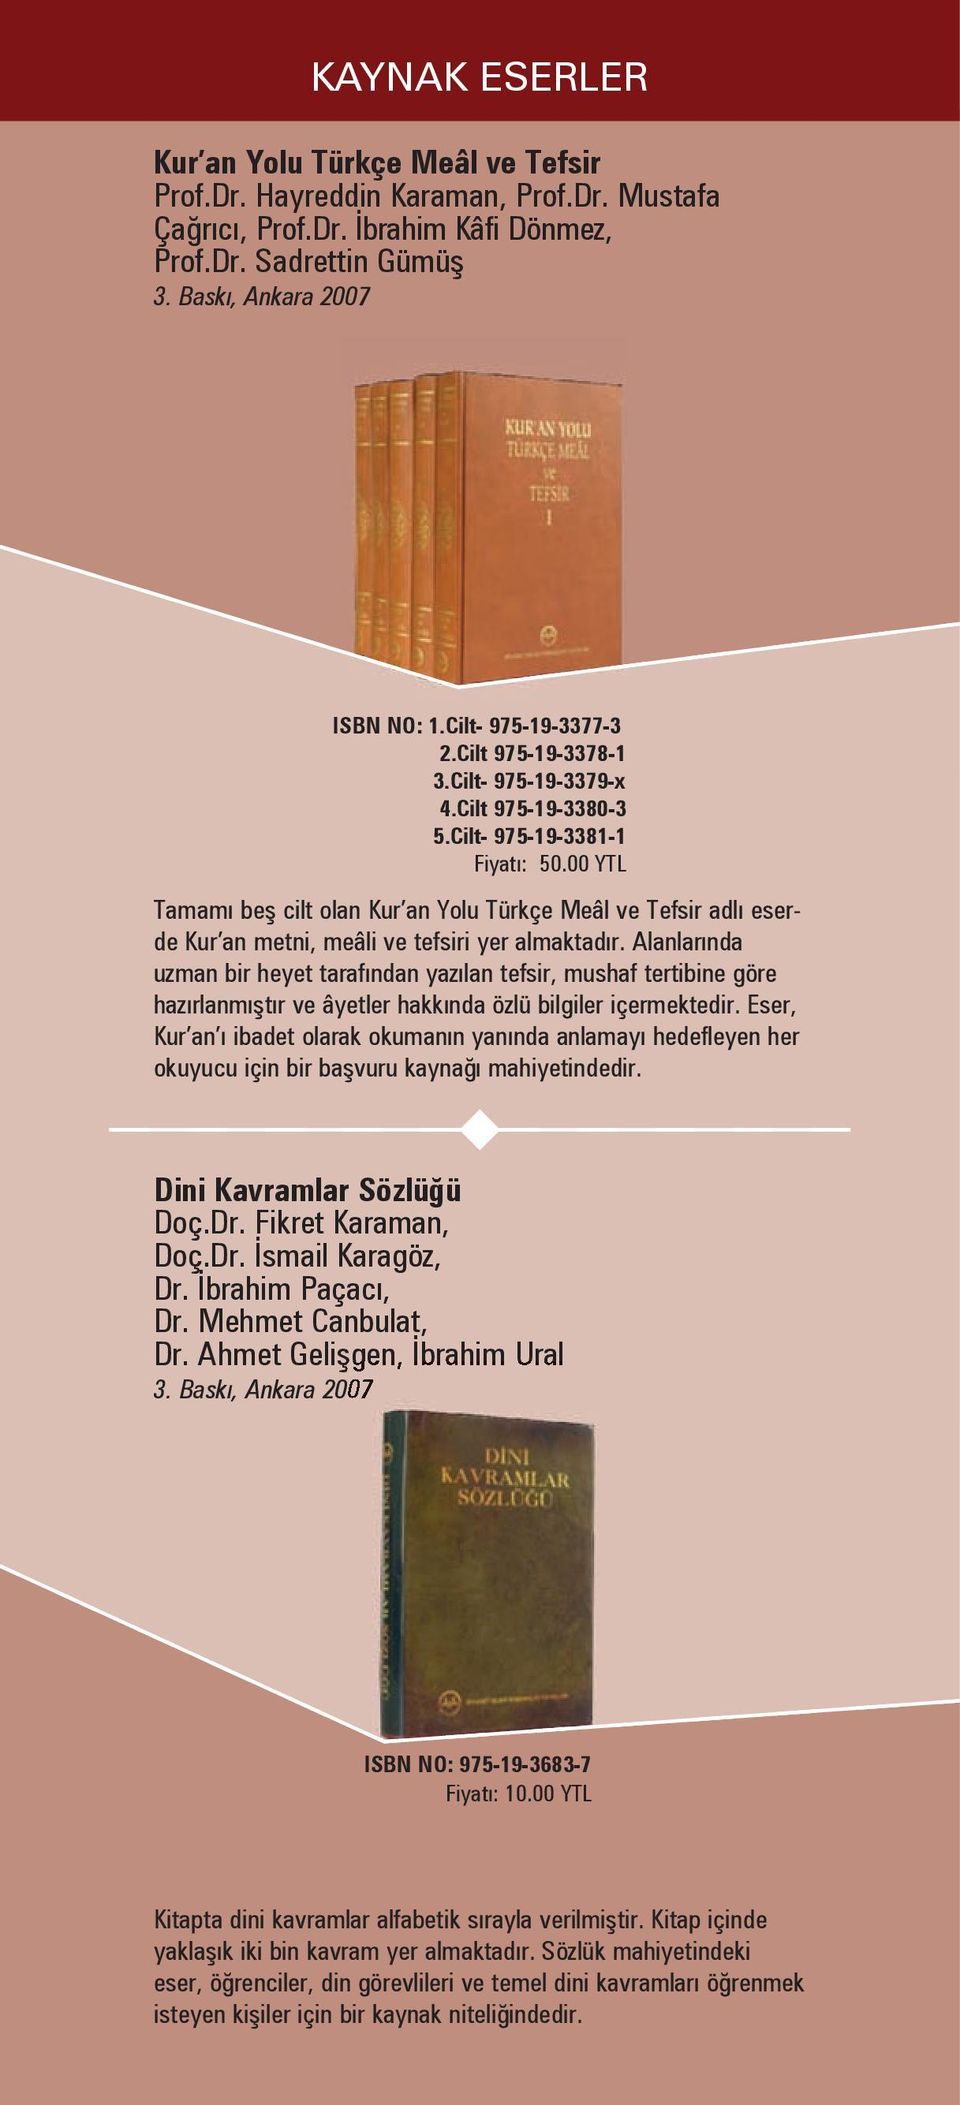 00 YTL Tamamı beş cilt olan Kur an Yolu Türkçe Meâl ve Tefsir adlı eserde Kur an metni, meâli ve tefsiri yer almaktadır.